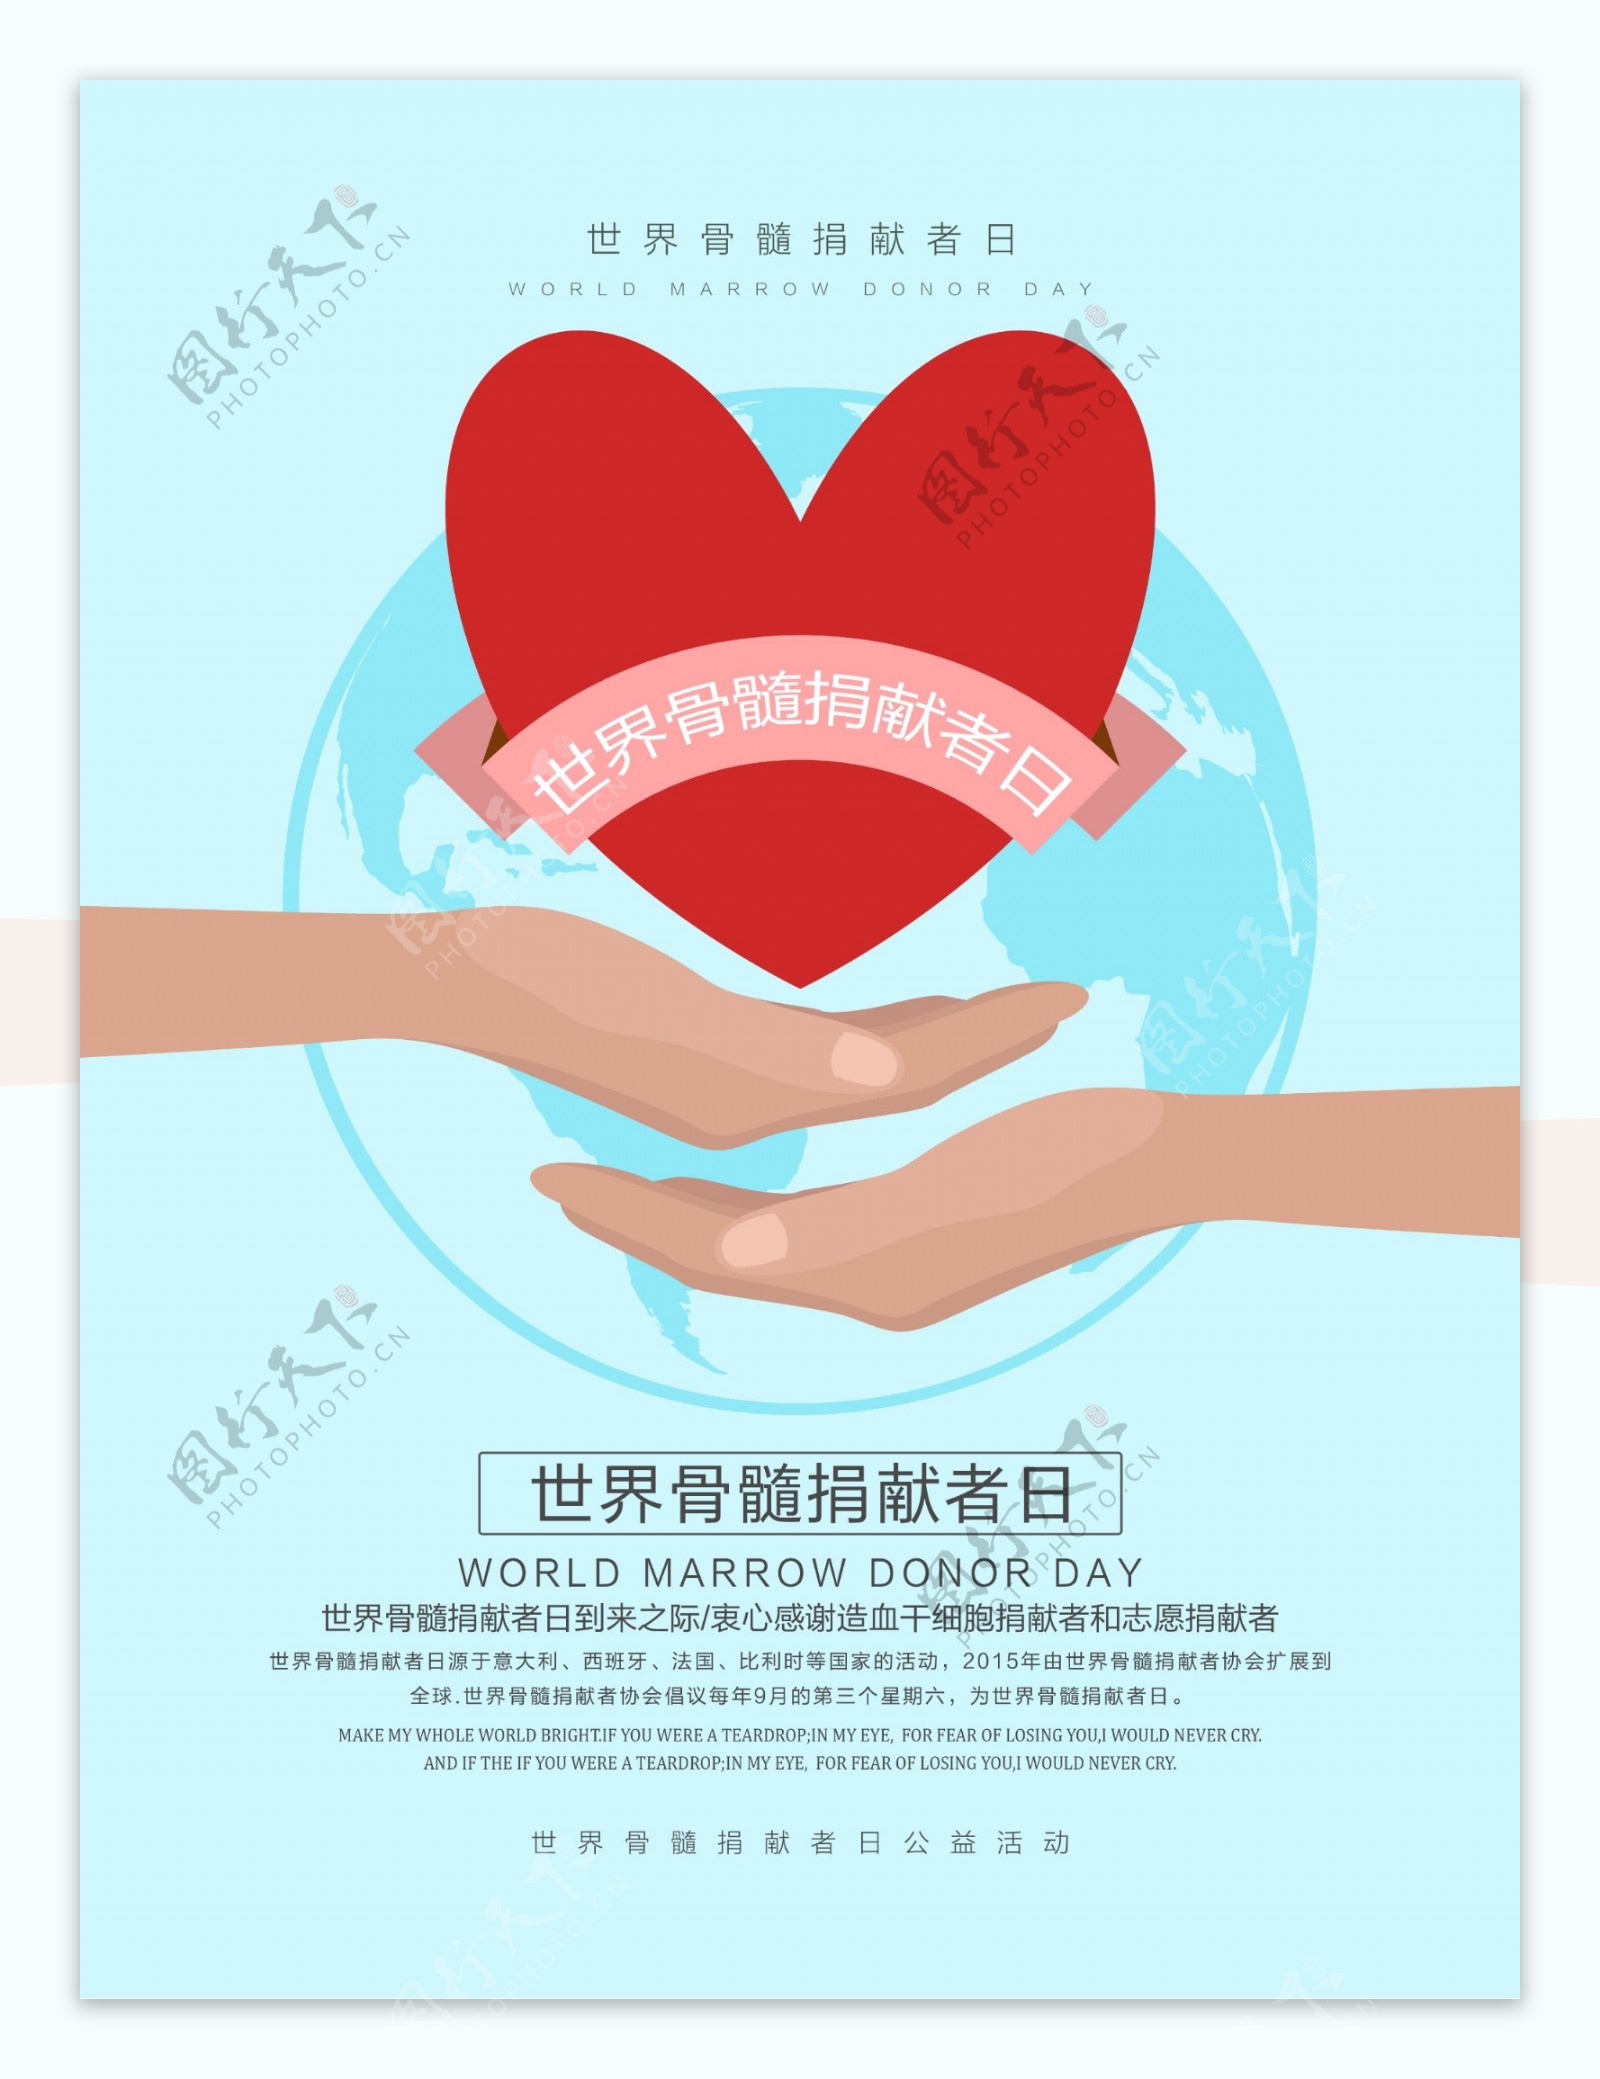 清新简约世界骨髓捐献者日公益活动宣传海报